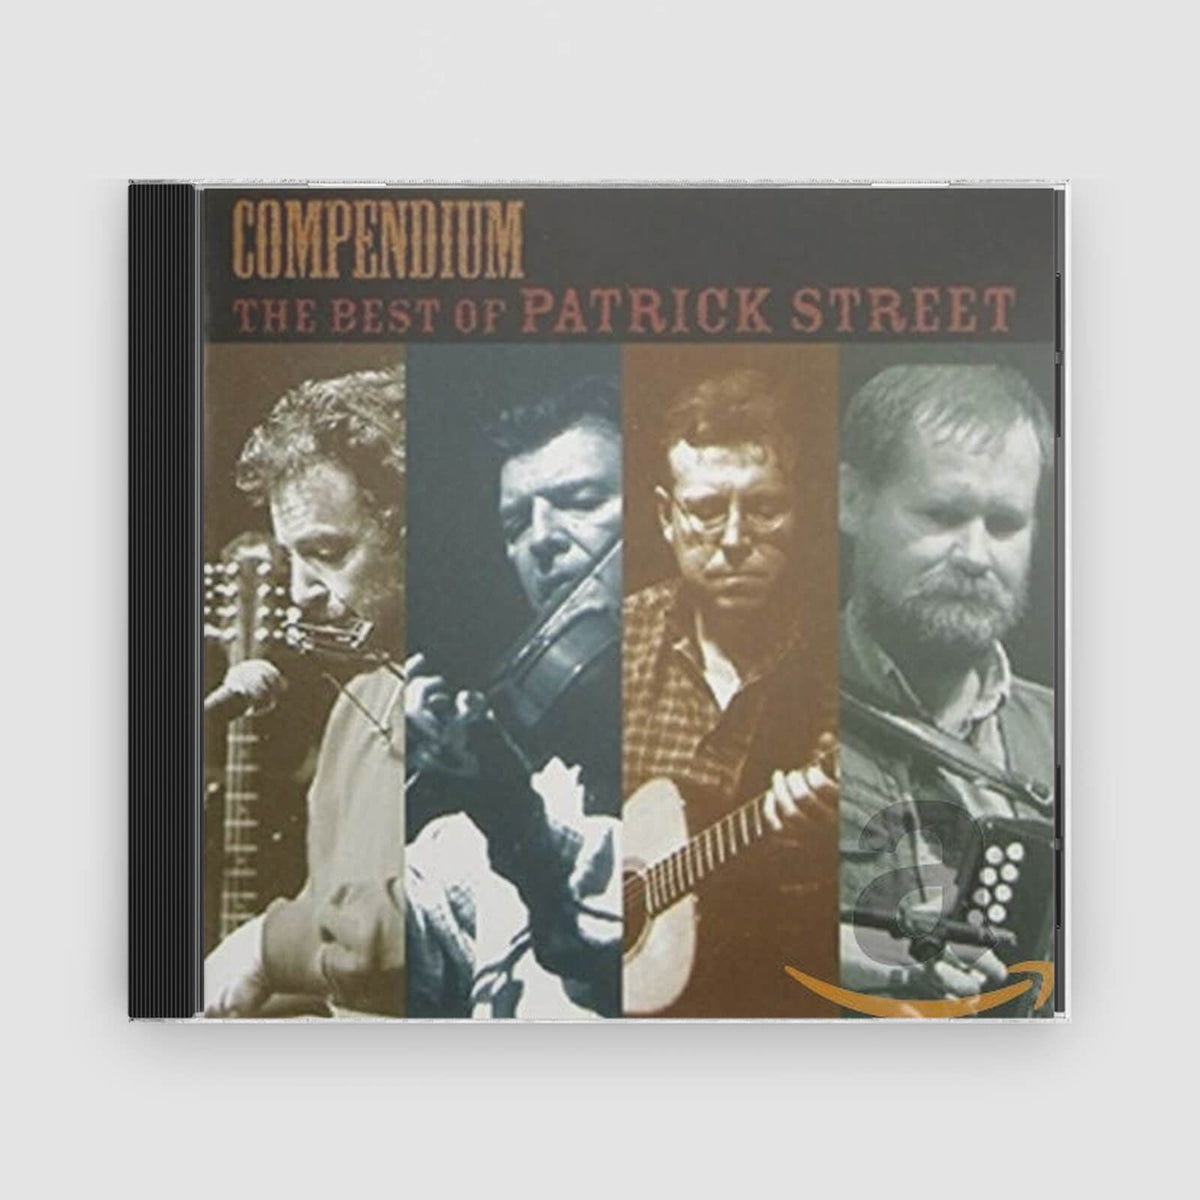 Patrick Street : Compendium